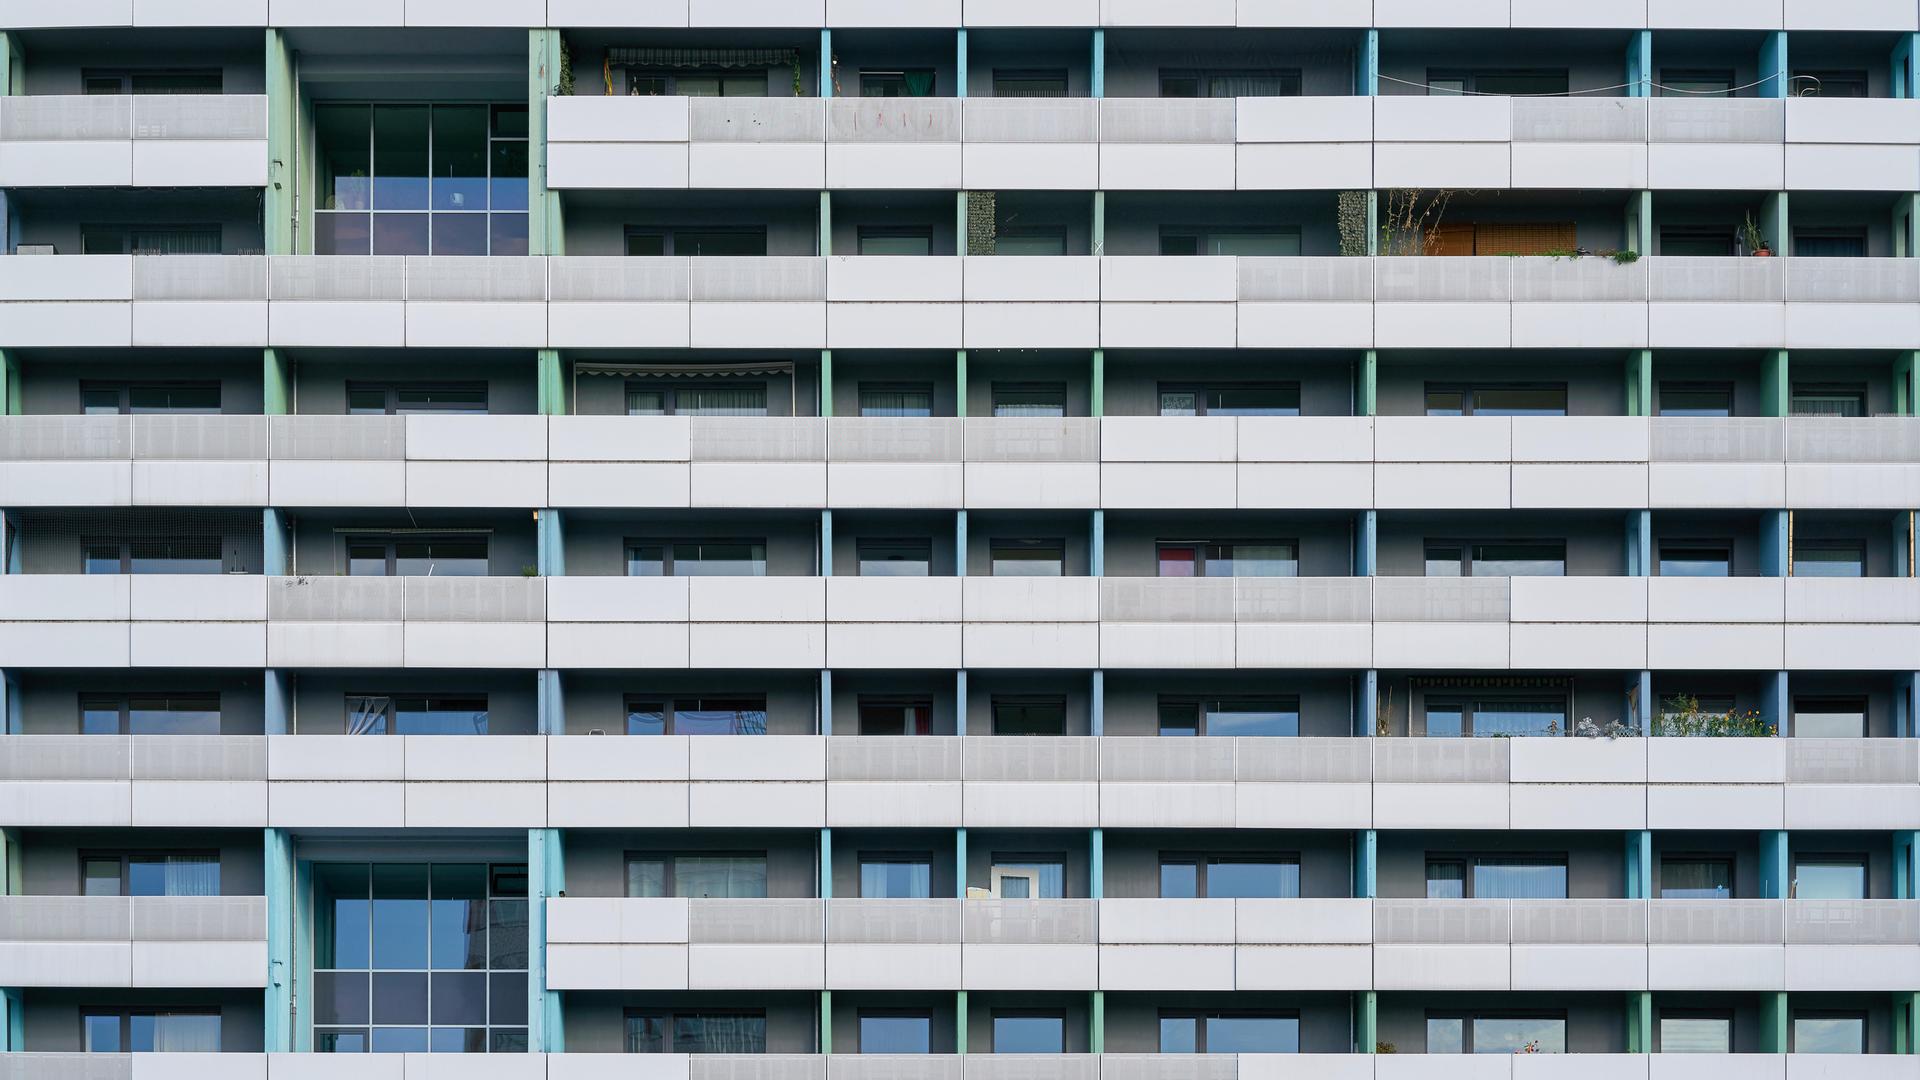 Symetrische Frontalansicht der Fassade eines sanierten DDR-Plattenbaus. 